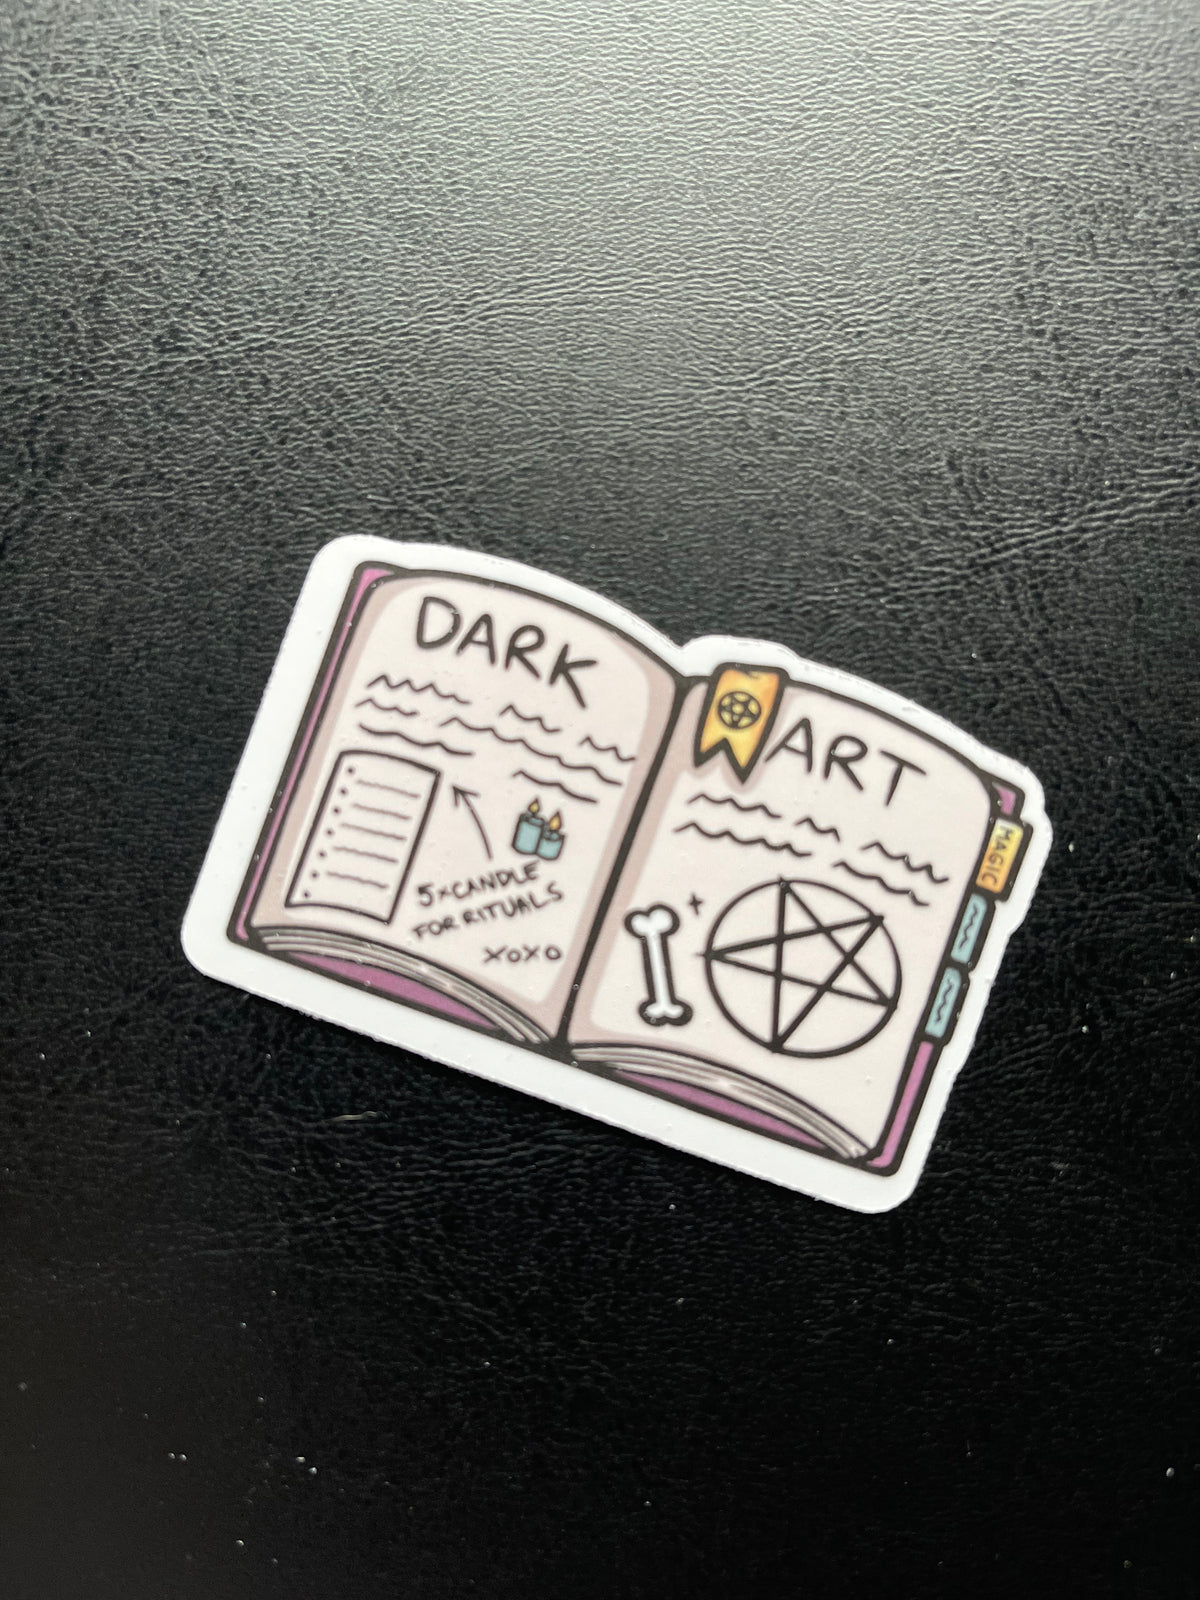 Dark Arts Book Vinyl Sticker